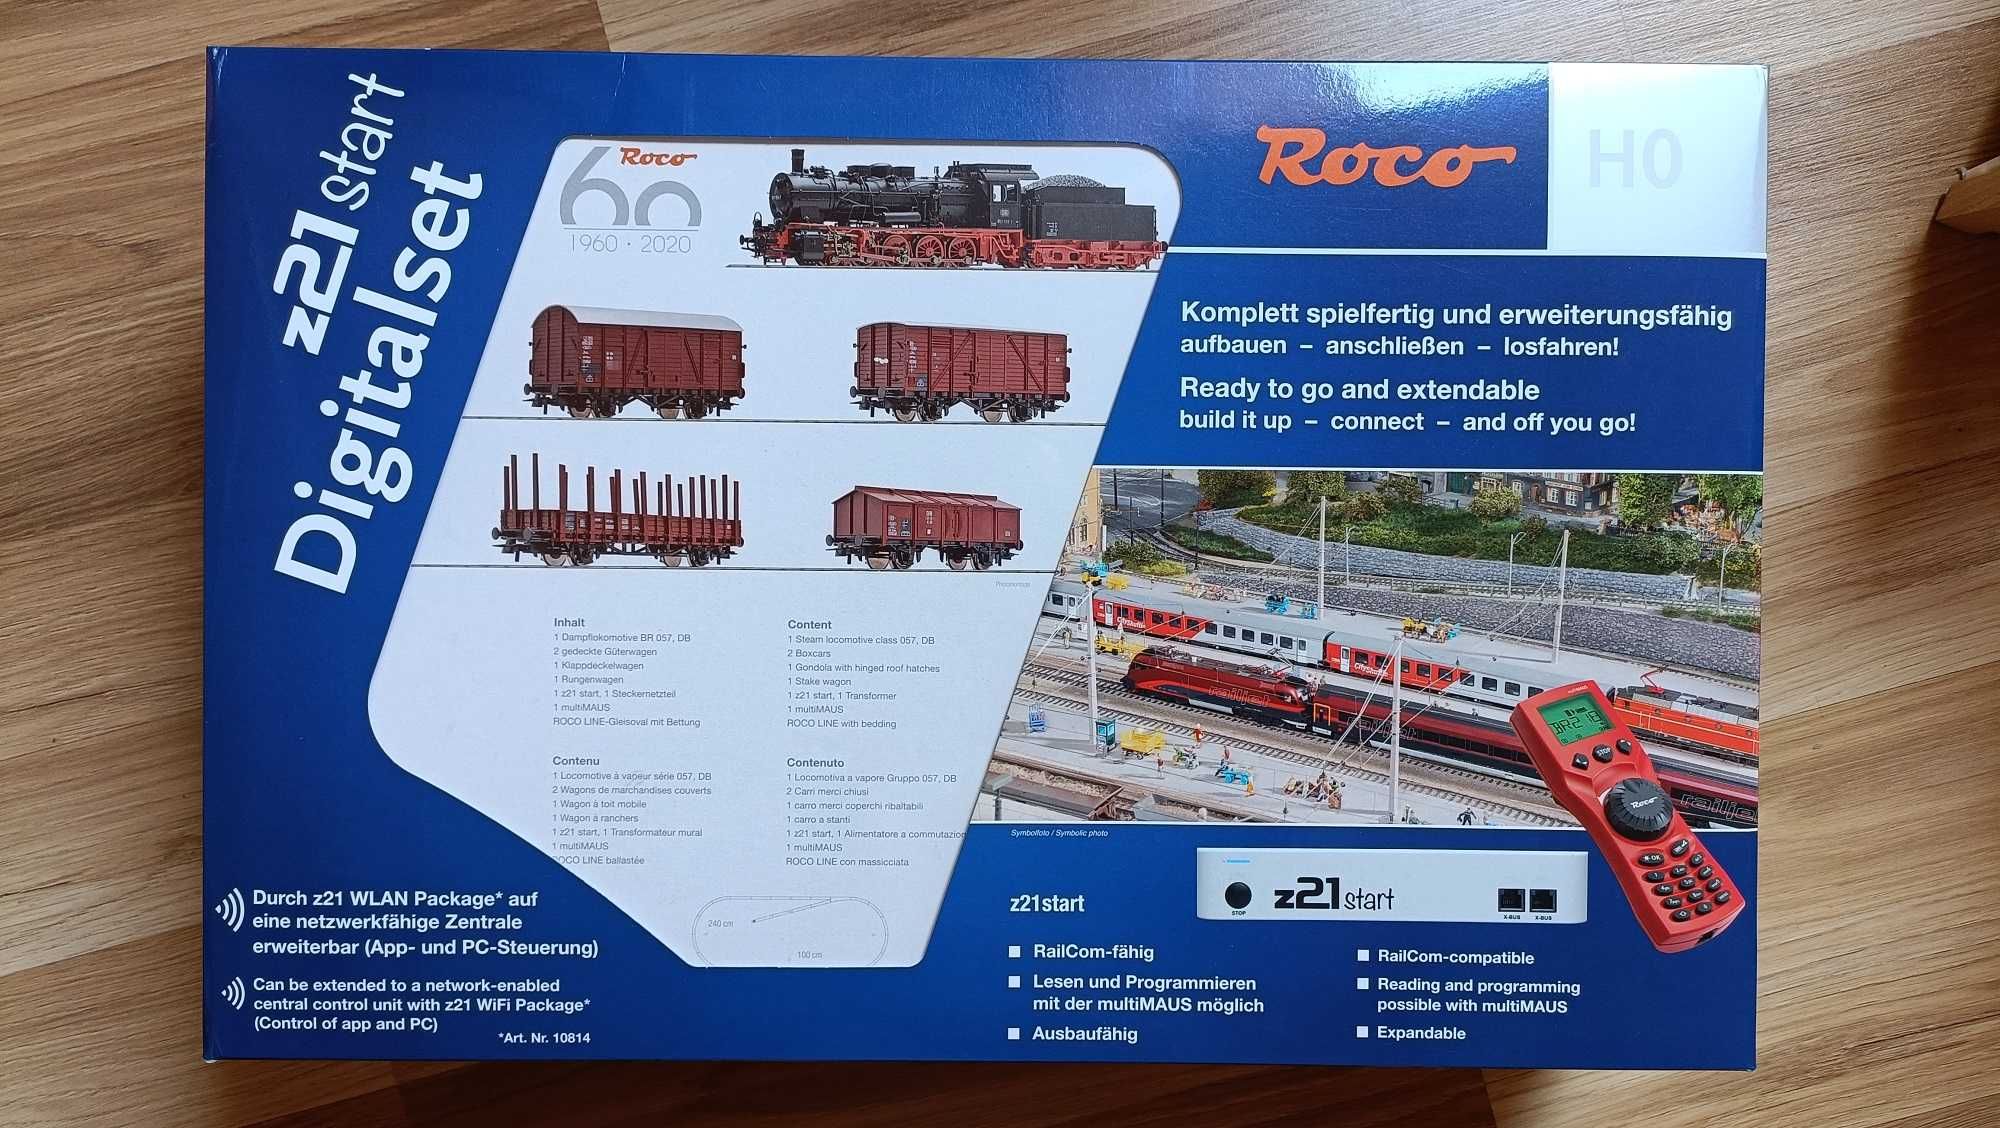 Zestaw lokomotywa BR 57 (DCC)+ 4 wagony, z21 Roco 51318, nie PIKO.